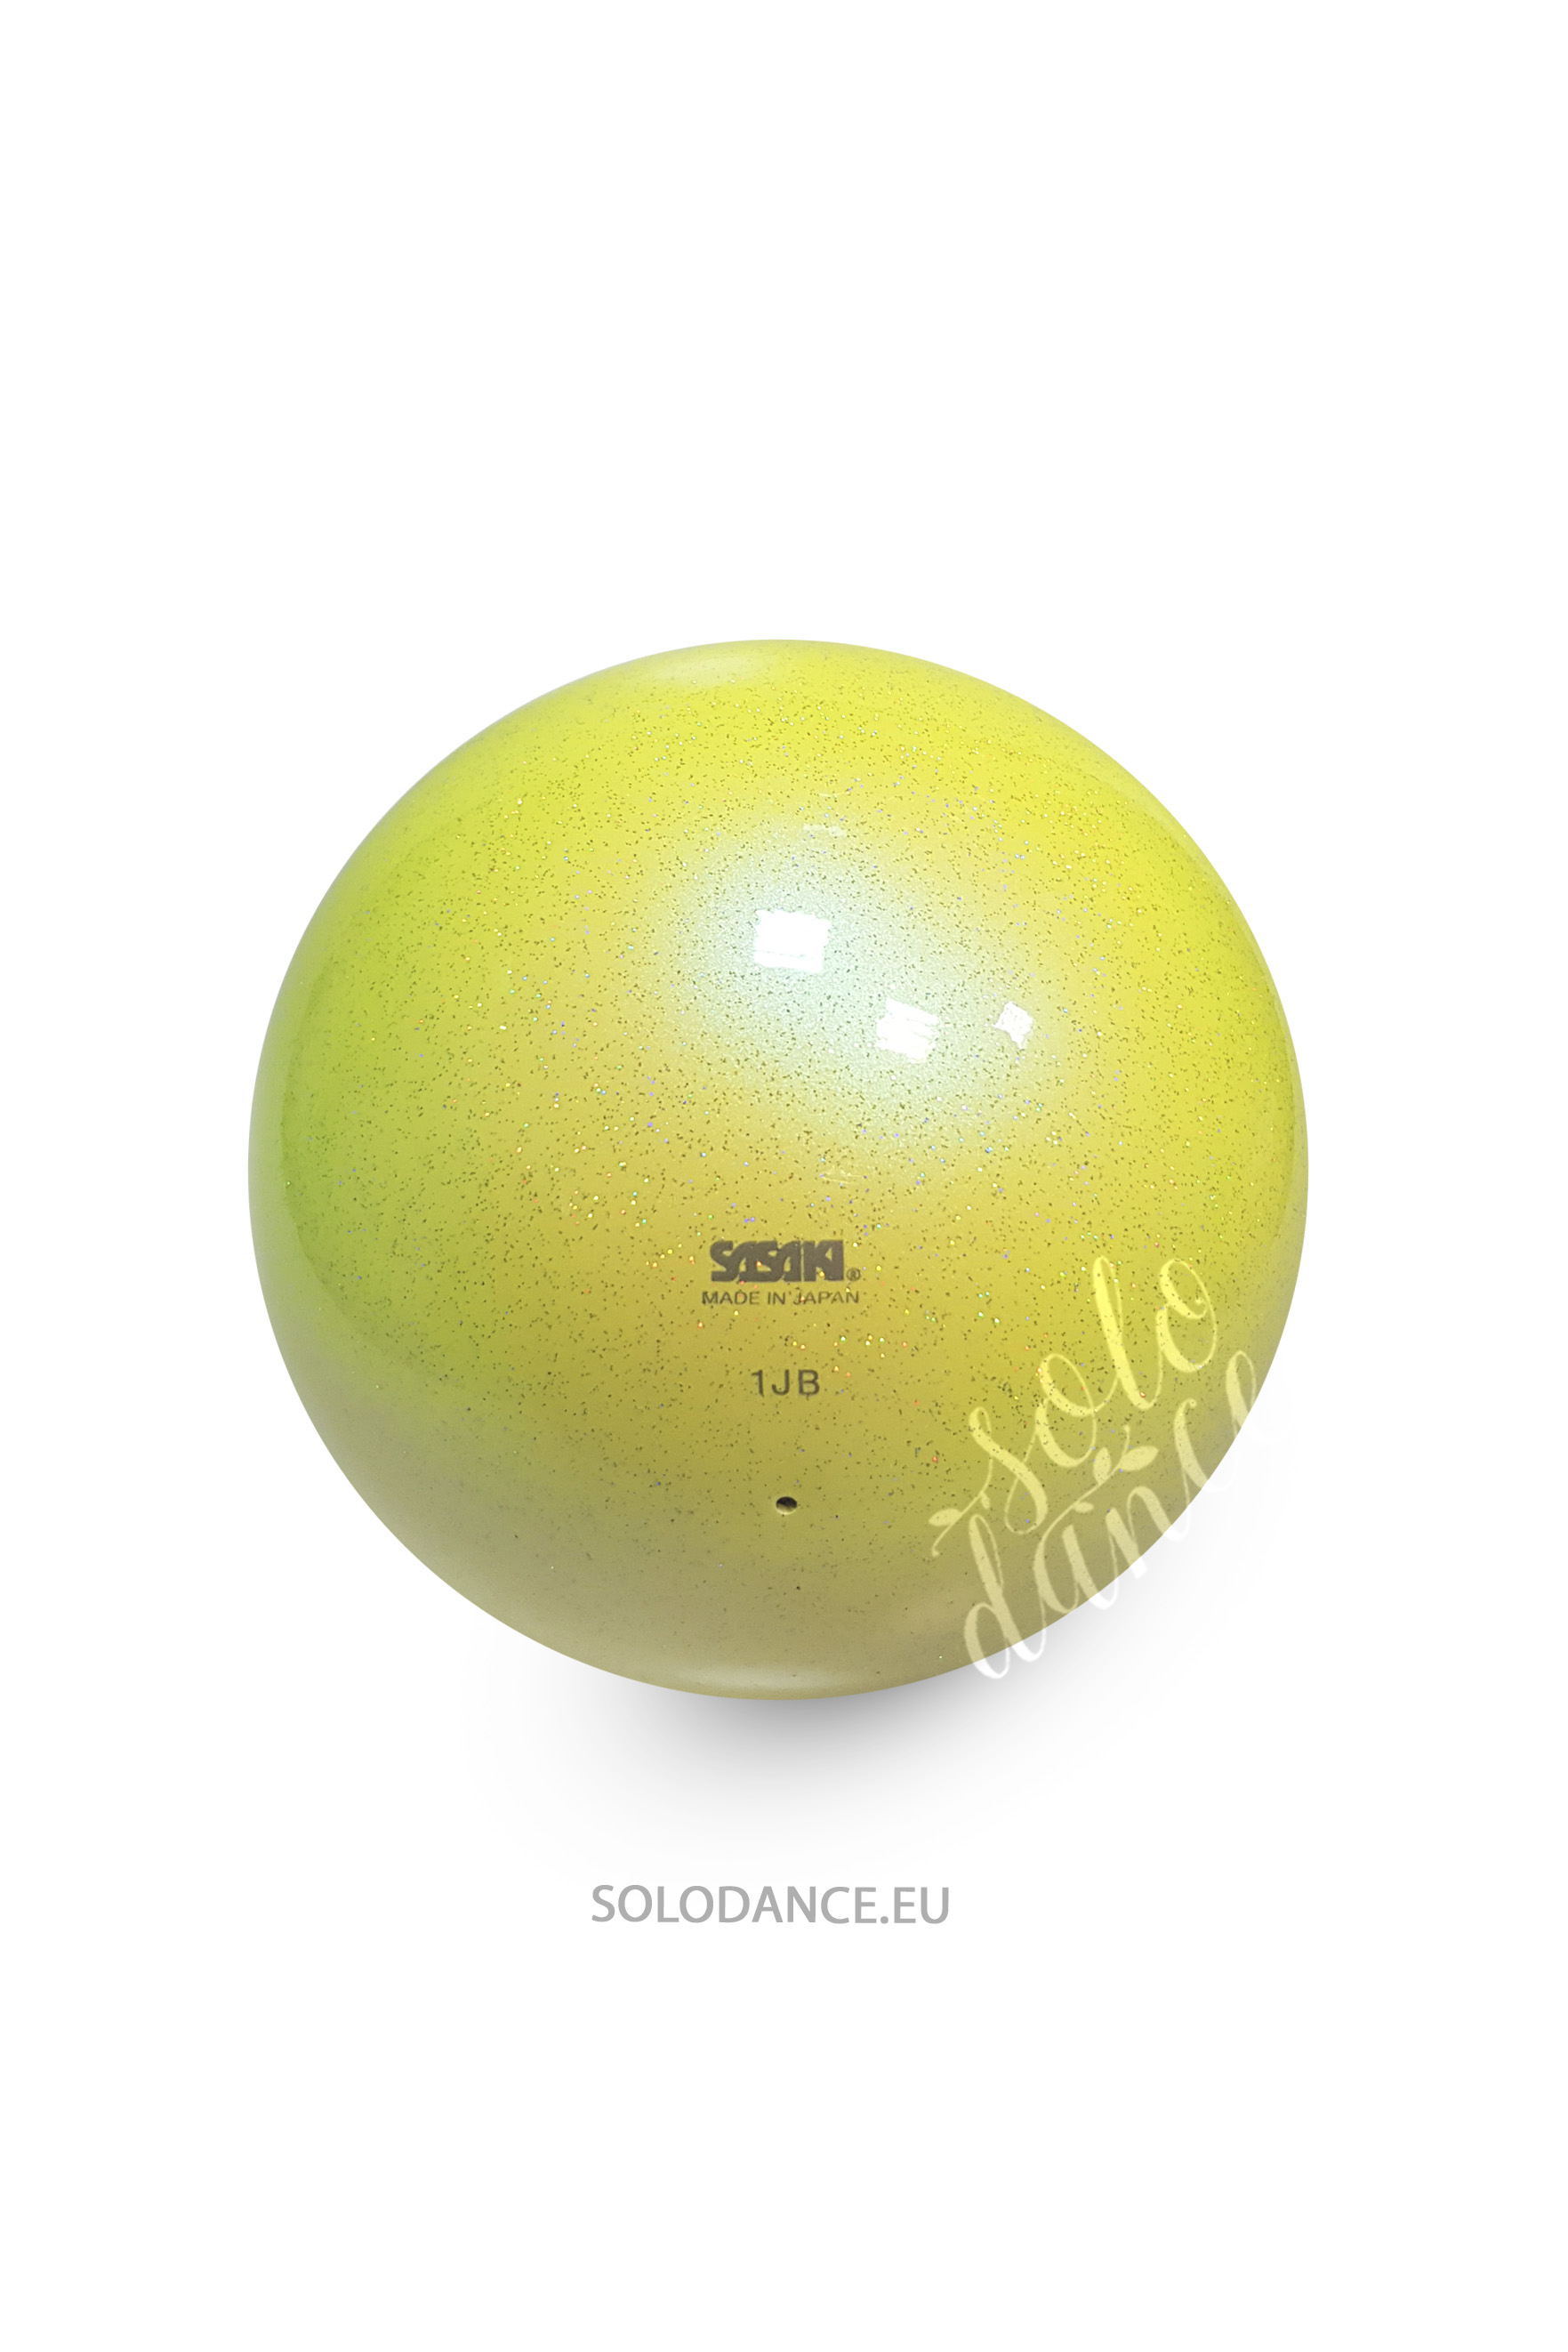 Rhythmic gymnastics ball Sasaki AURORA M-207MAU 17 cm LYMY (LIME YELLOW)